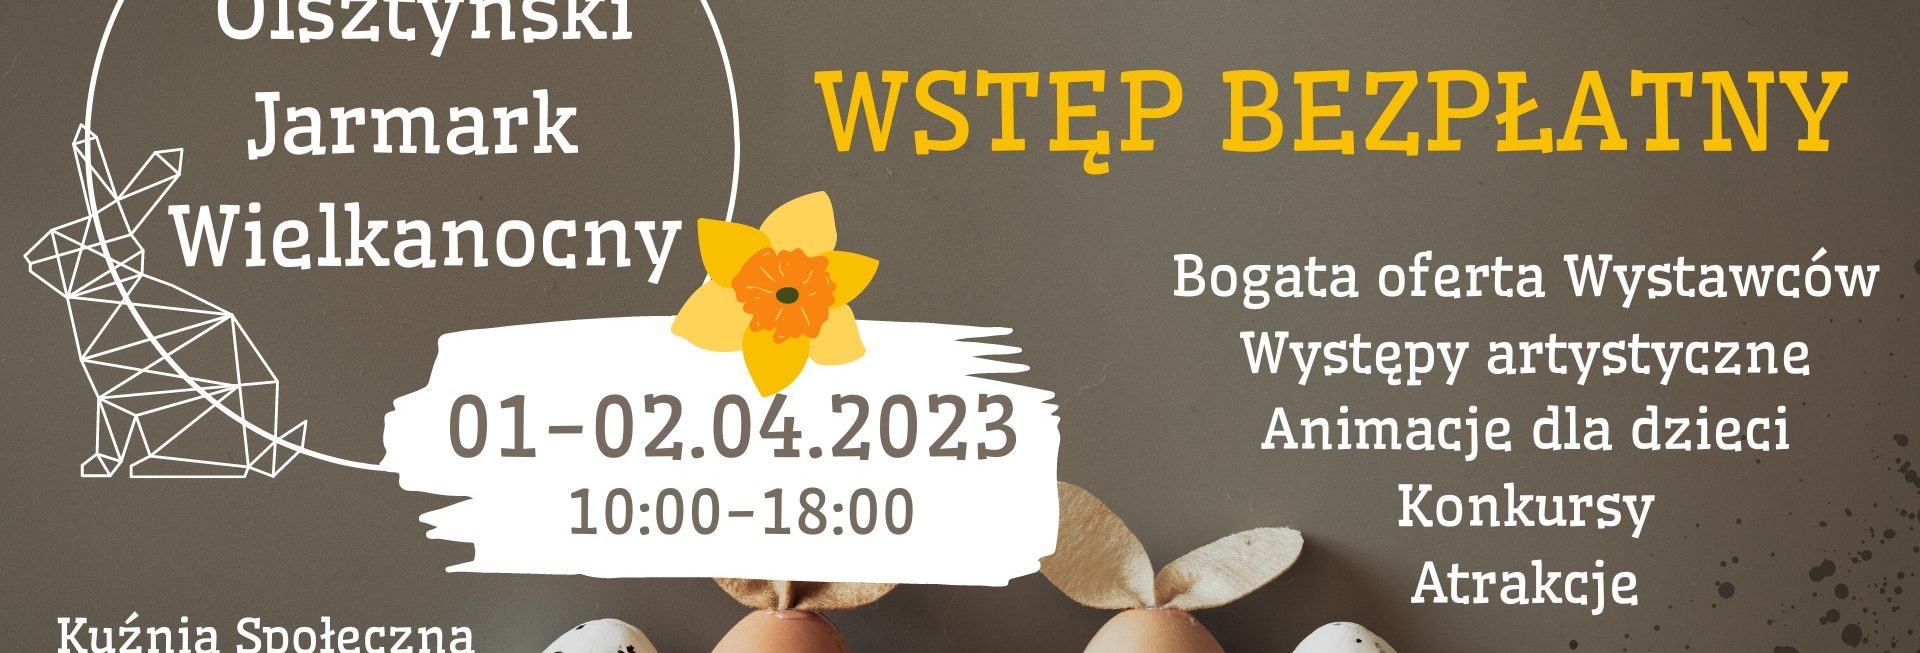 Plakat zapraszający w dniach 1-2 kwietnia 2023 r. do Kuźni Społecznej w Olsztynie na Olsztyński Jarmark Wielkanocny Olsztyn 2023.